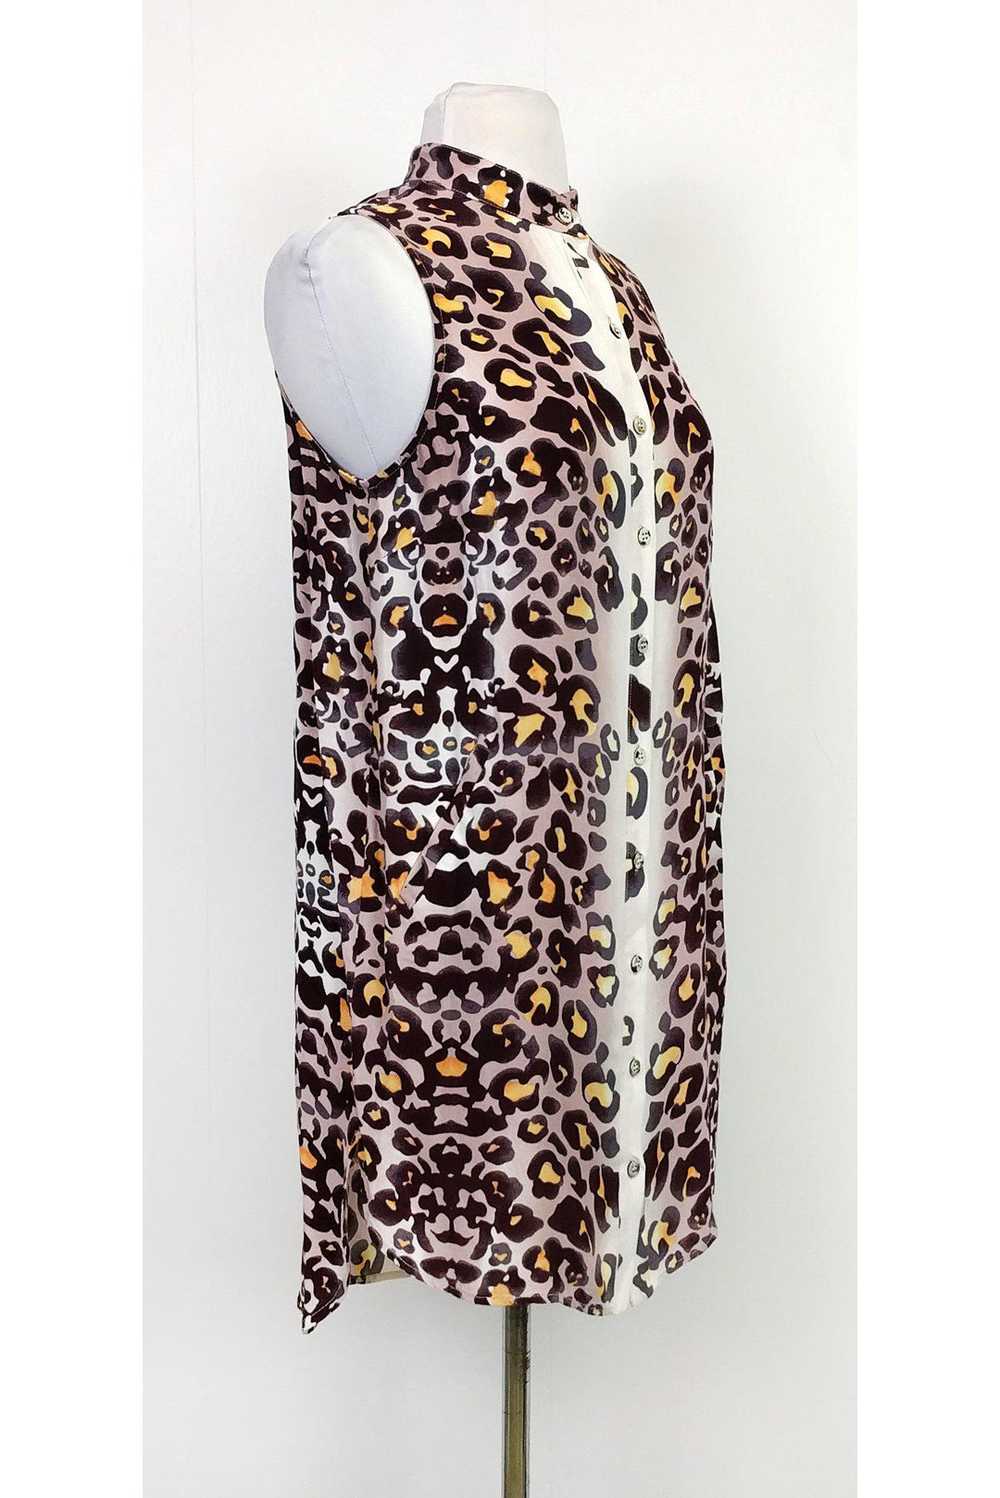 Mara Hoffman - Animal Print Shirt Dress Sz XS - image 2